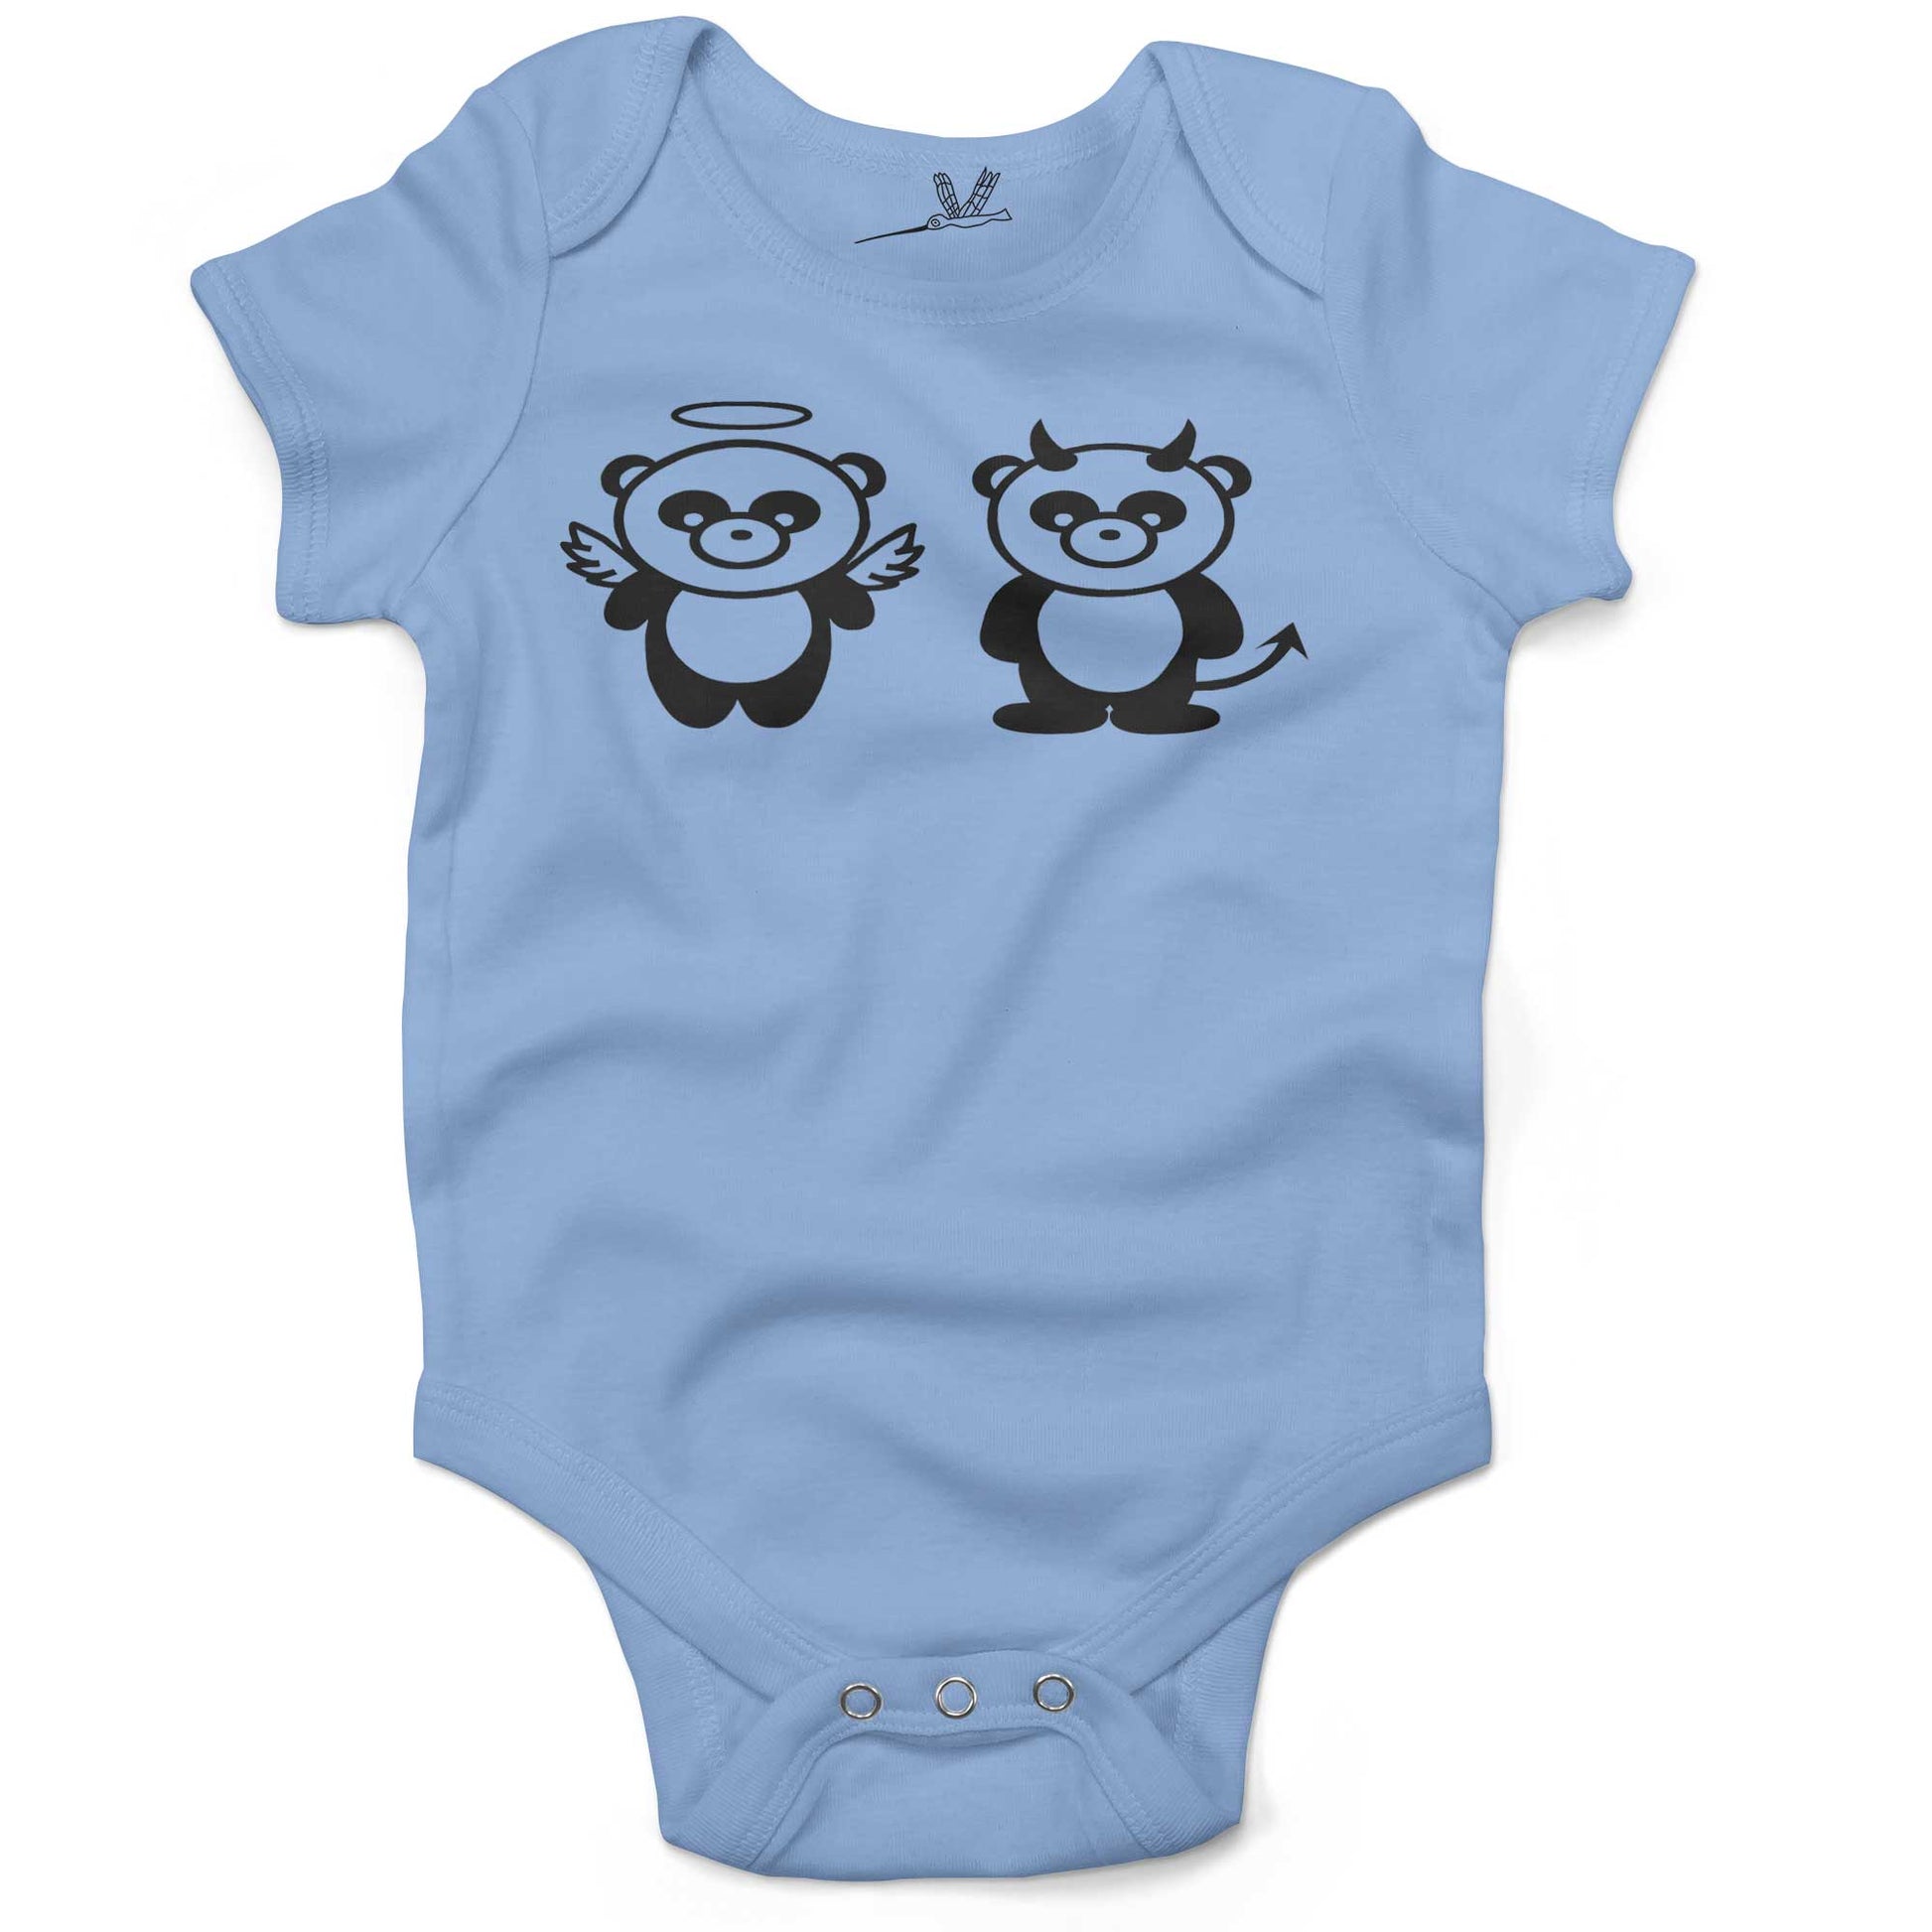 Good Panda, Bad Panda Infant Bodysuit or Raglan Tee-Organic Baby Blue-3-6 months